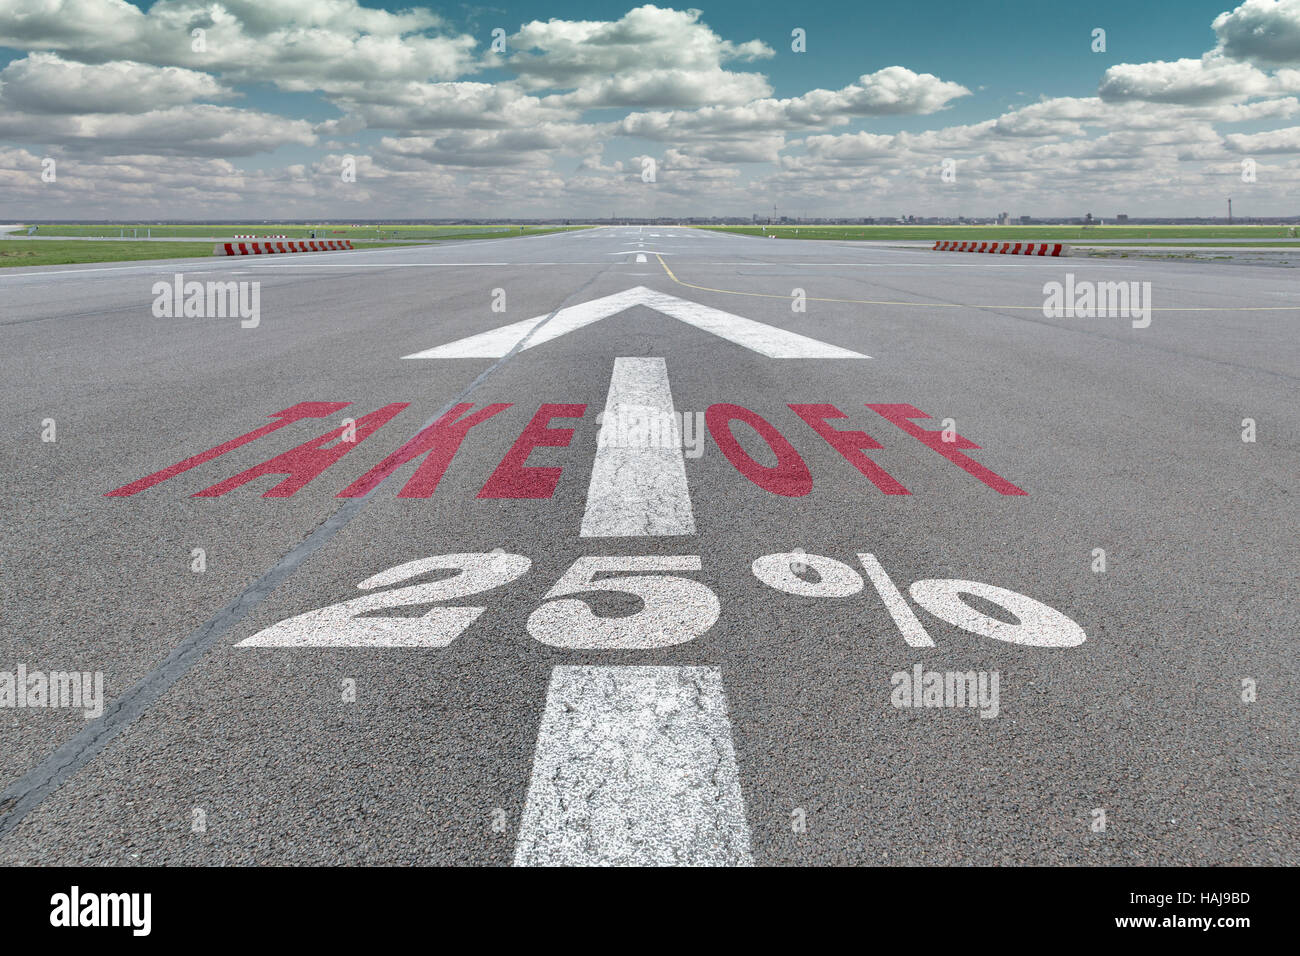 Start-und Landebahn des Flughafens mit Pfeil Leitlinie, ausziehen und 25 Prozent-Zeichen gedruckt auf dem asphalt Stockfoto